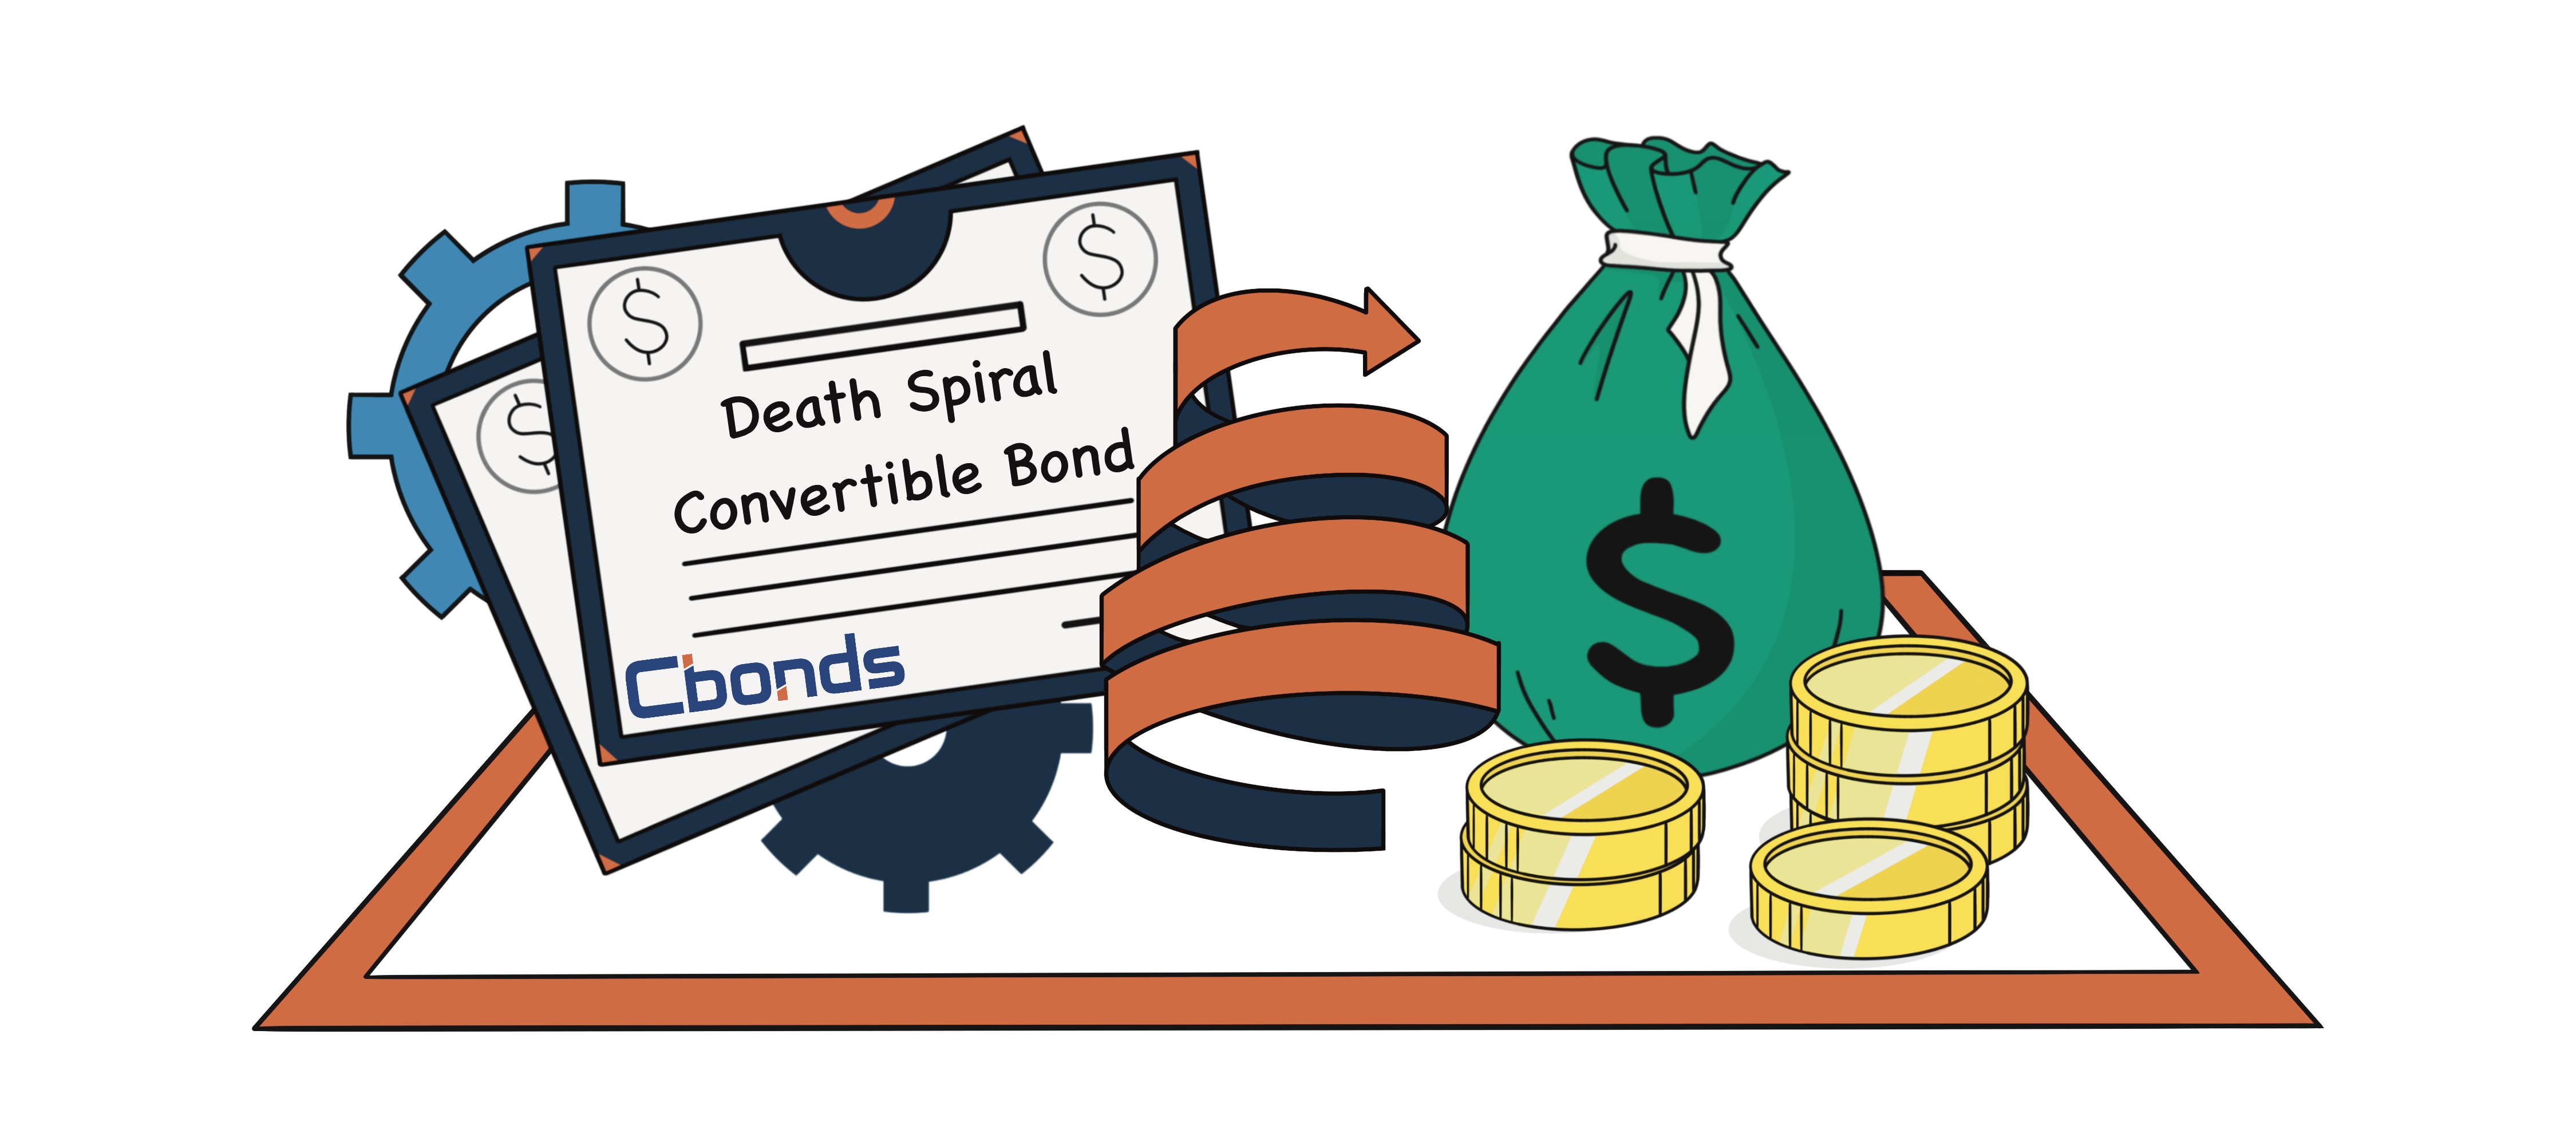 Death Spiral Convertible Bond